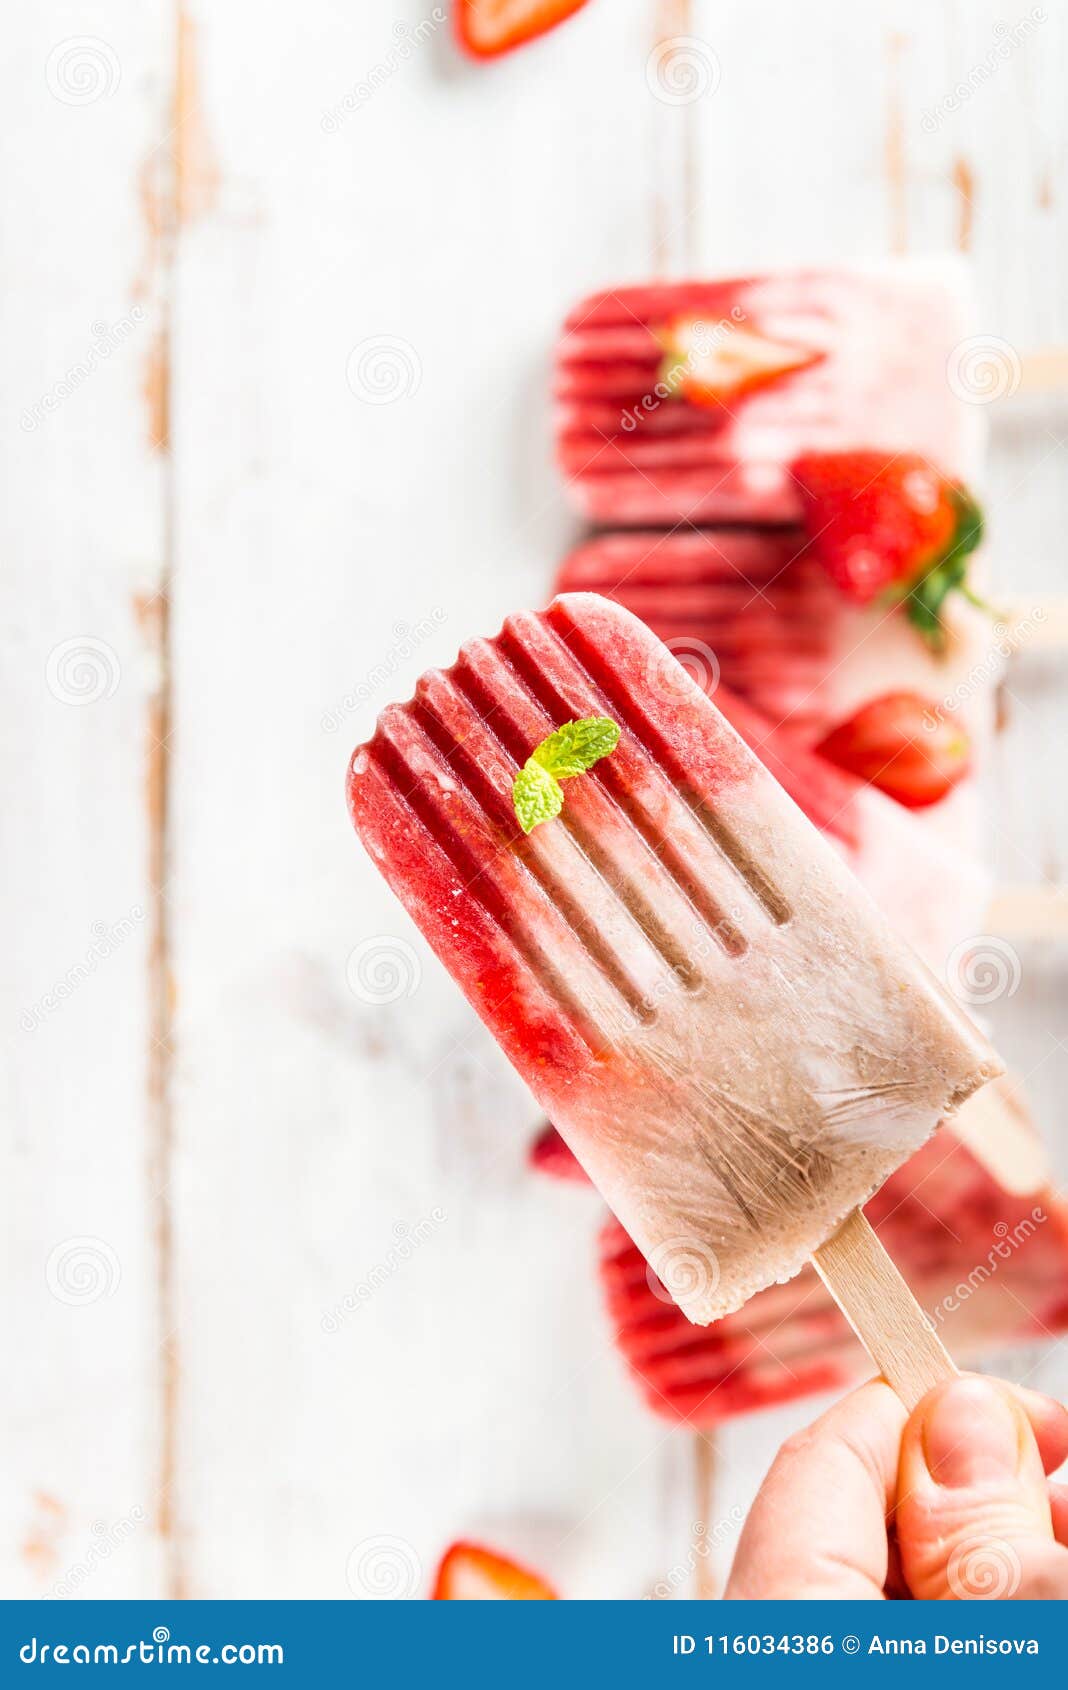 蓝莓与草莓口味的冰棍49107_美食文化_美食类_图库壁纸_68Design